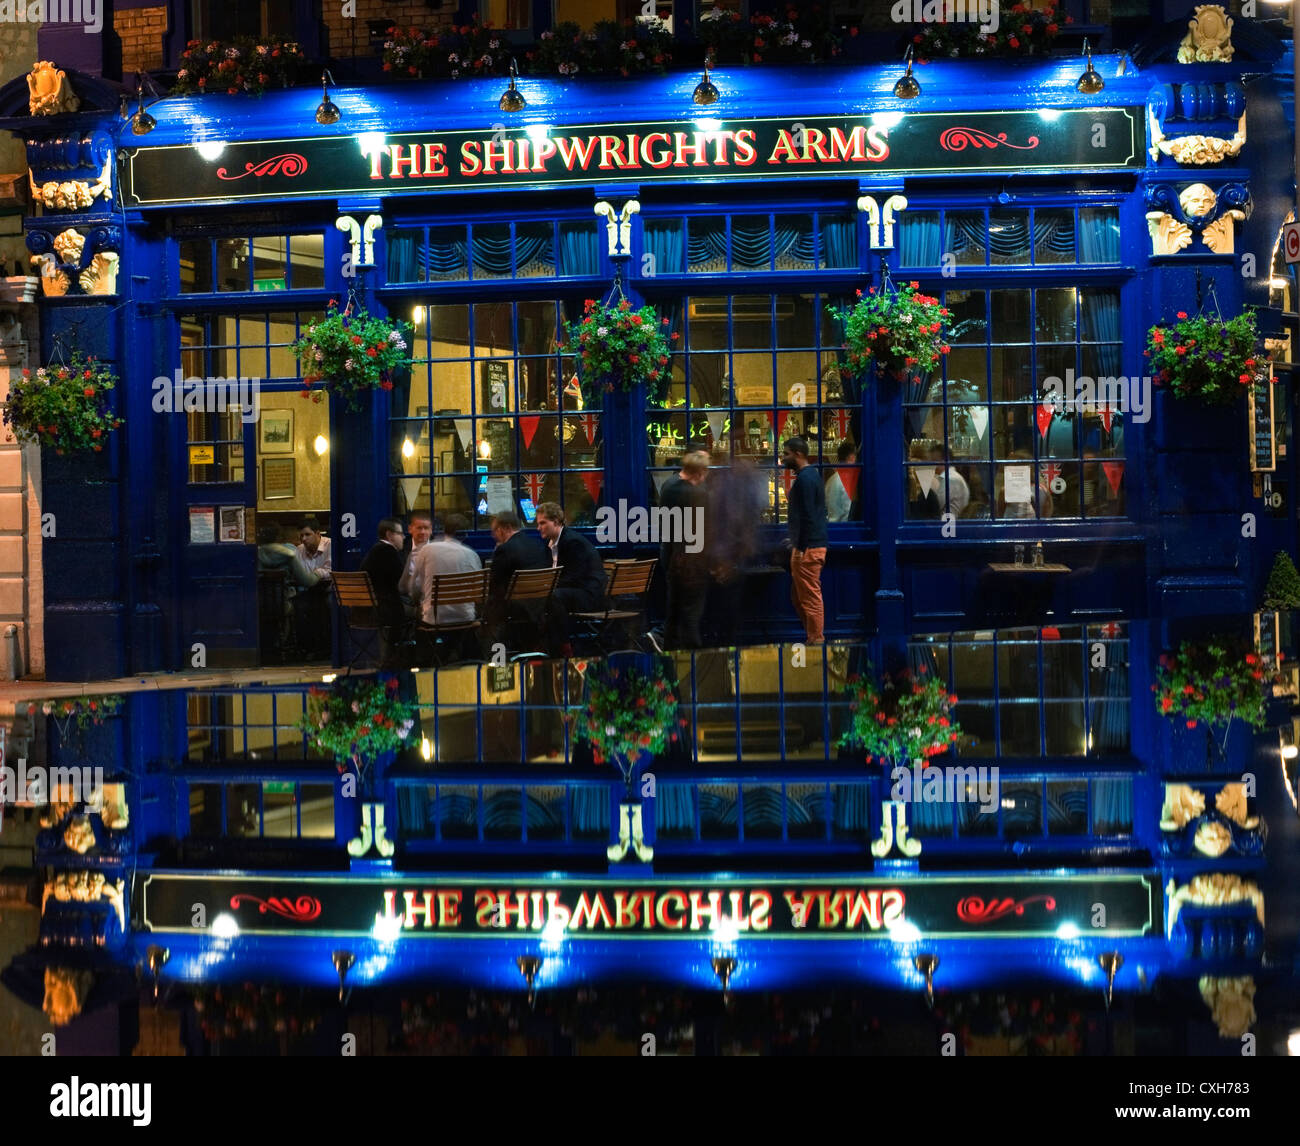 El Shipwright armas en Tooley Street Londres reflejado en una característica con agua potable de los trabajadores municipales fuera de noche Foto de stock